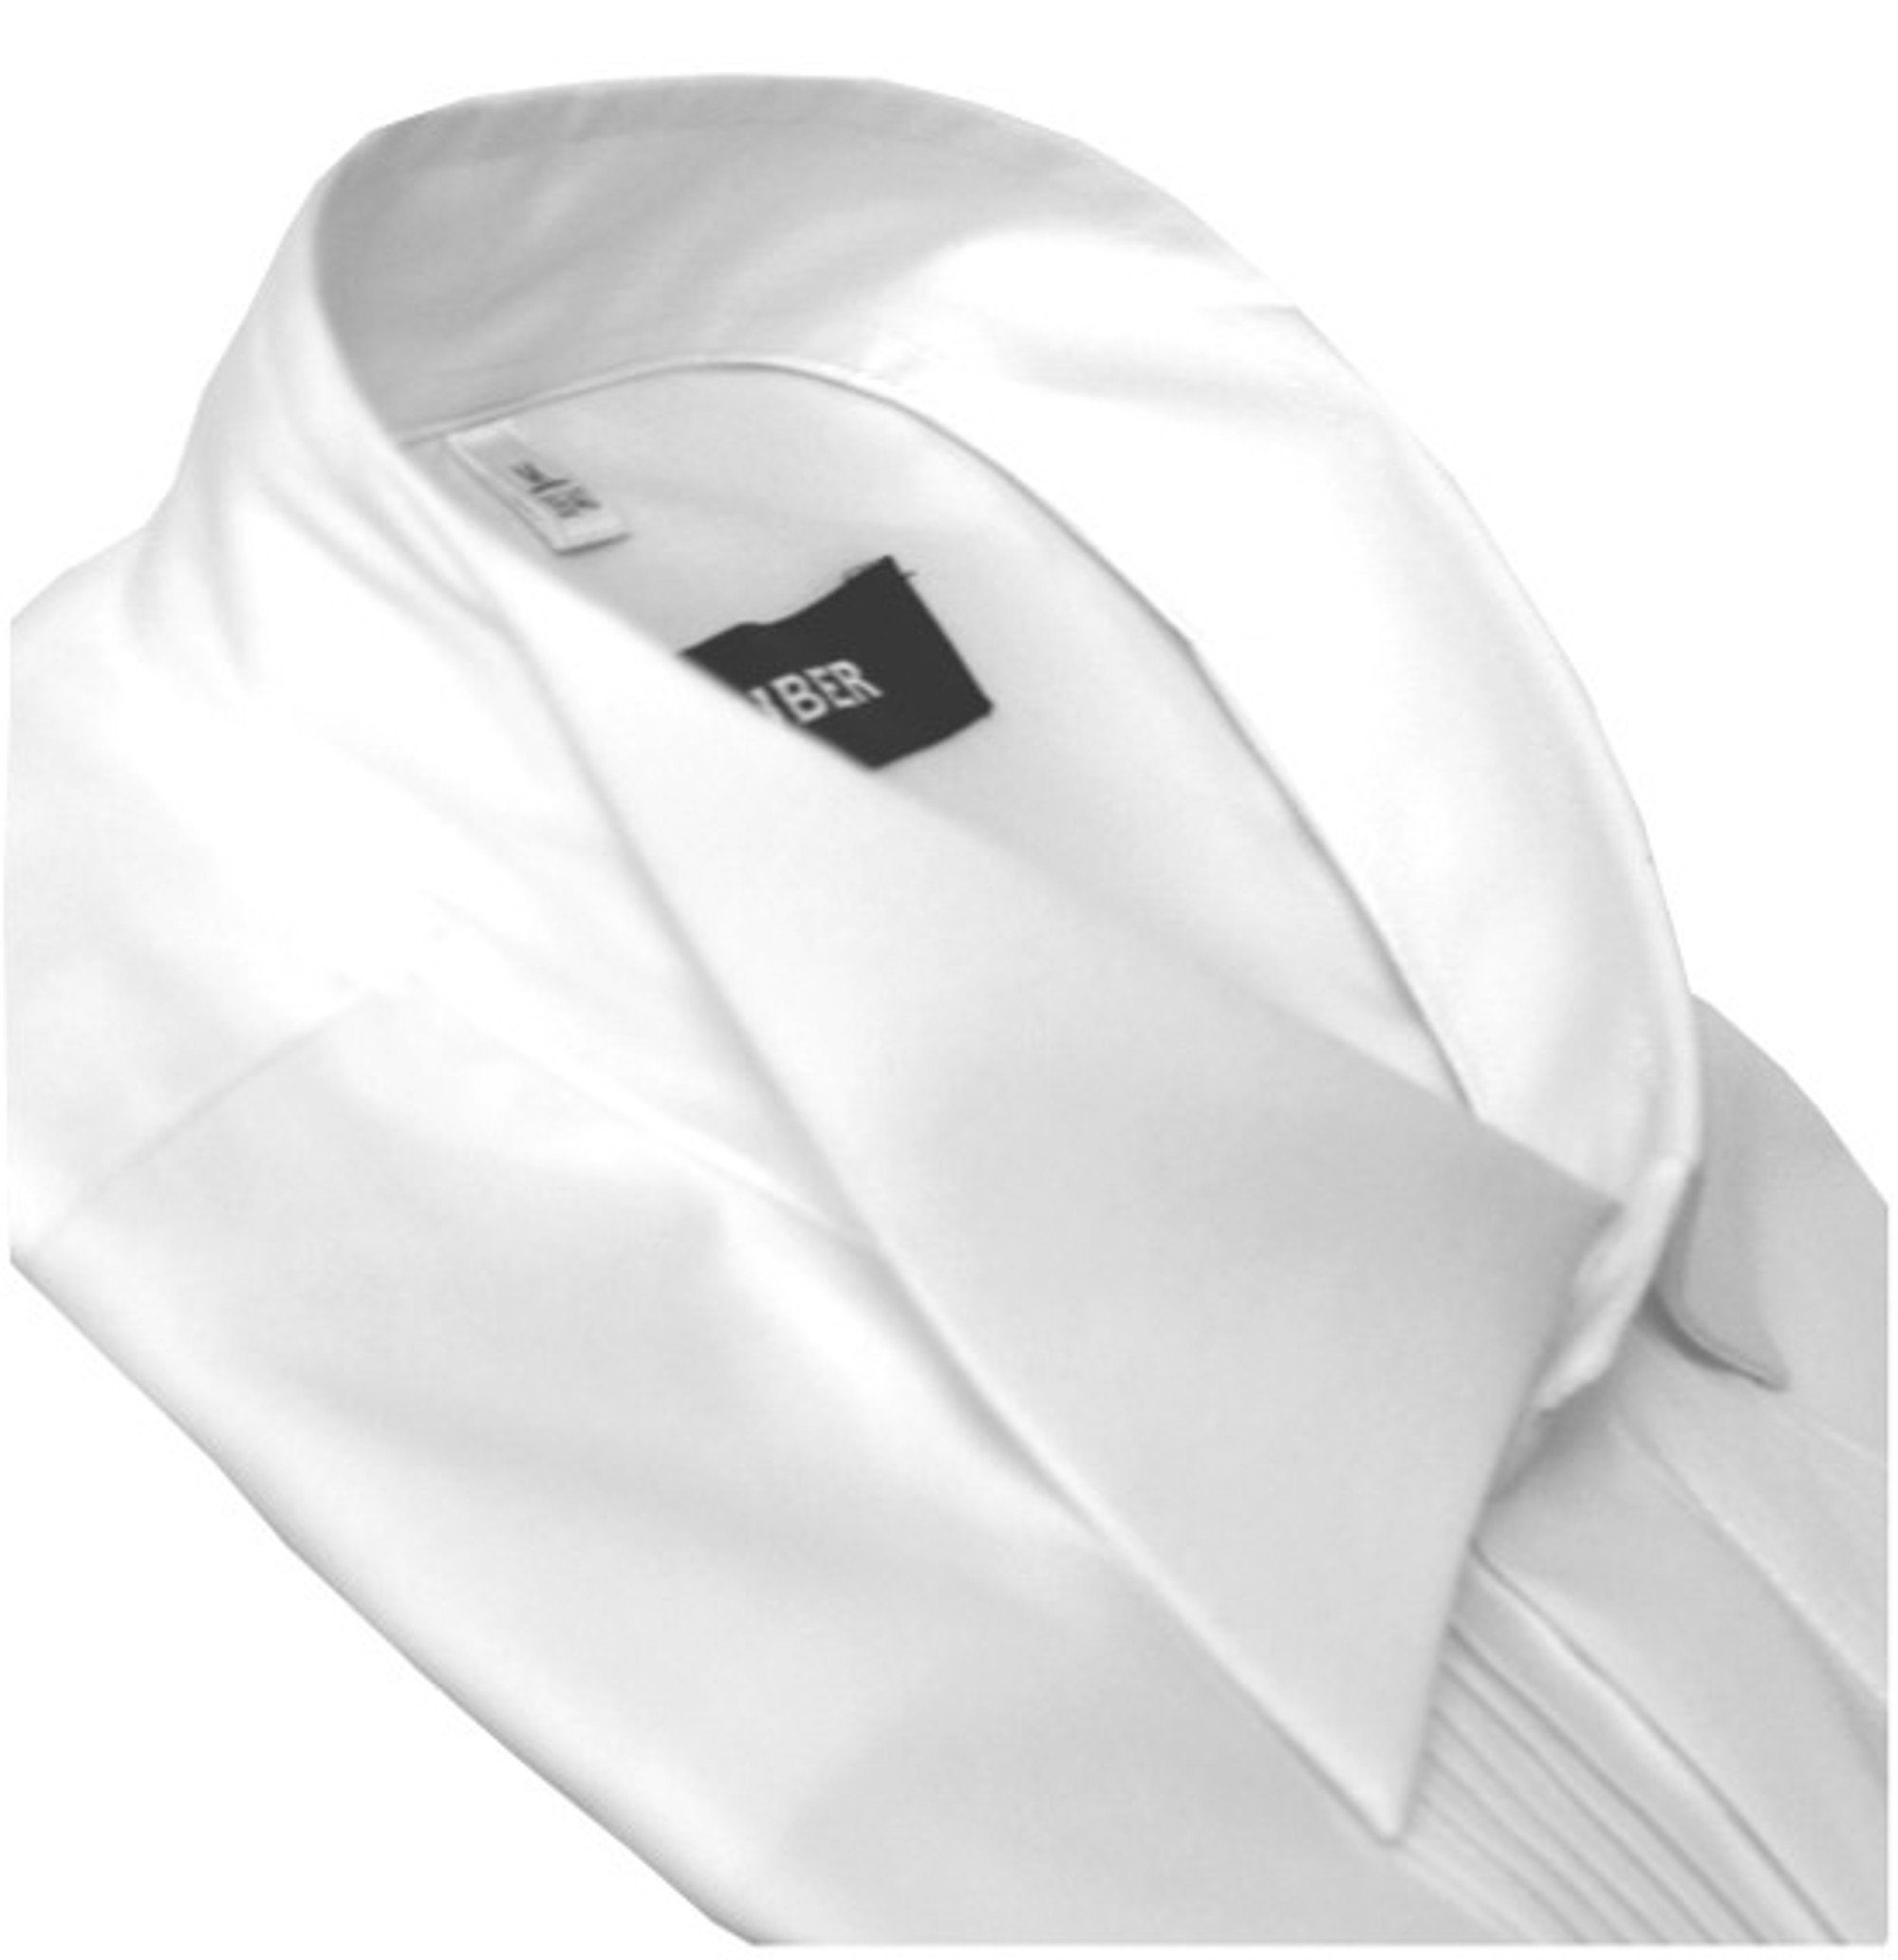 Huber Hemden Smokinghemd HU-0171 Kläppchen-Kragen, Plissee, Fit weiß Regular Umschlag-Manschette